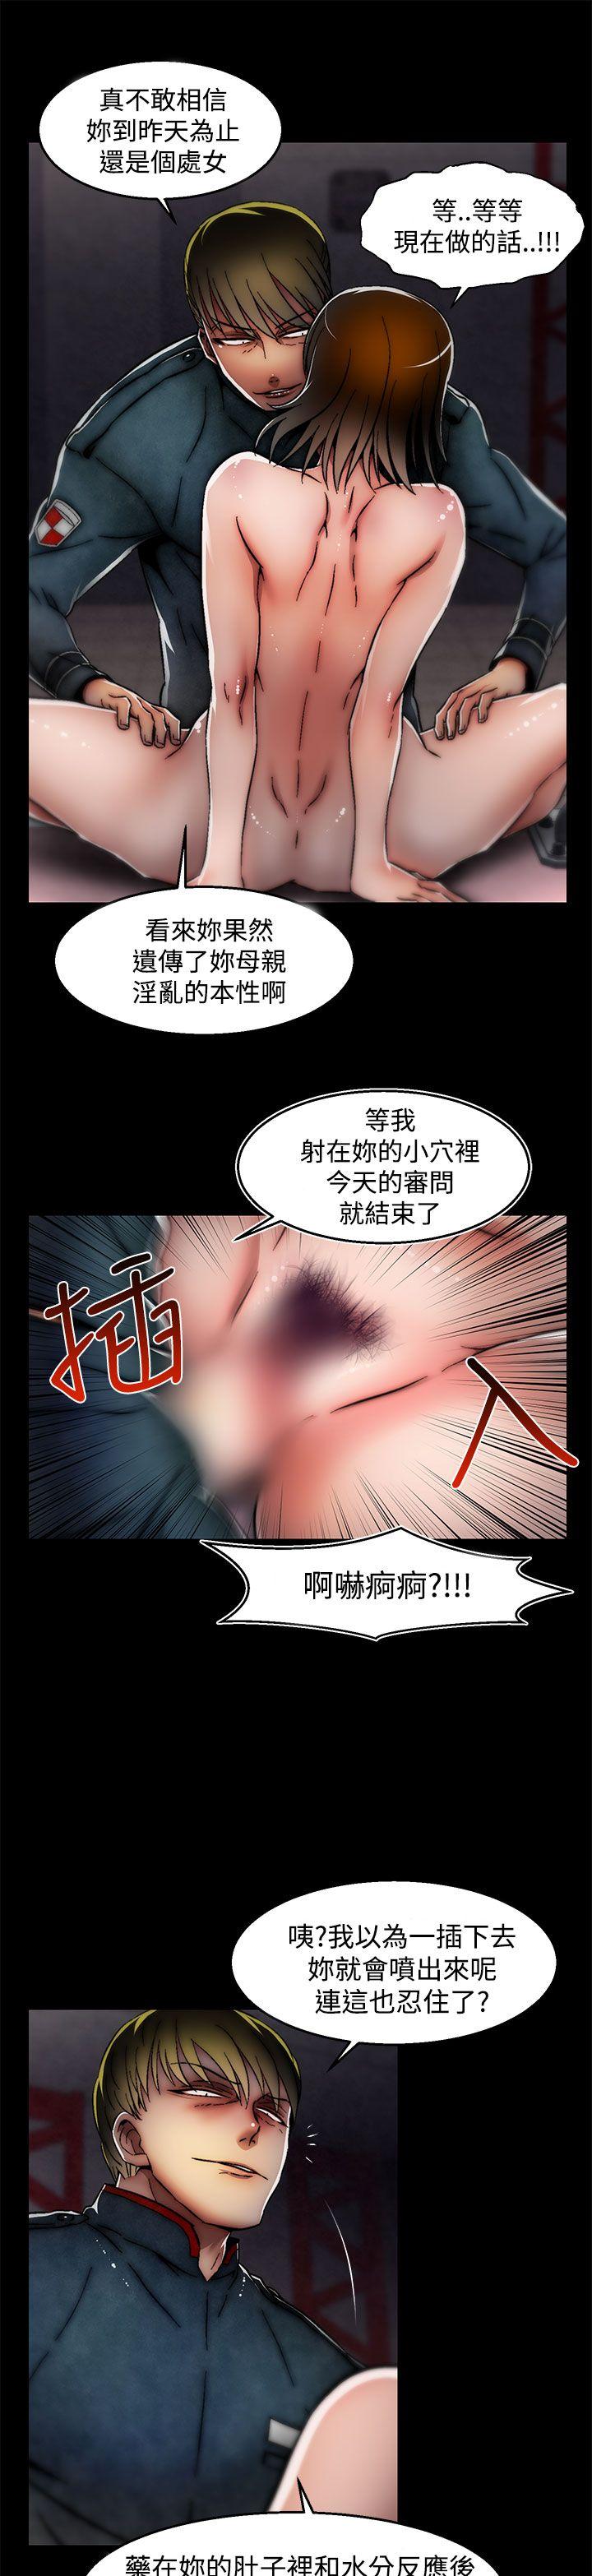 韩国污漫画 啪啪啪調教所 第28话(第2季) 11